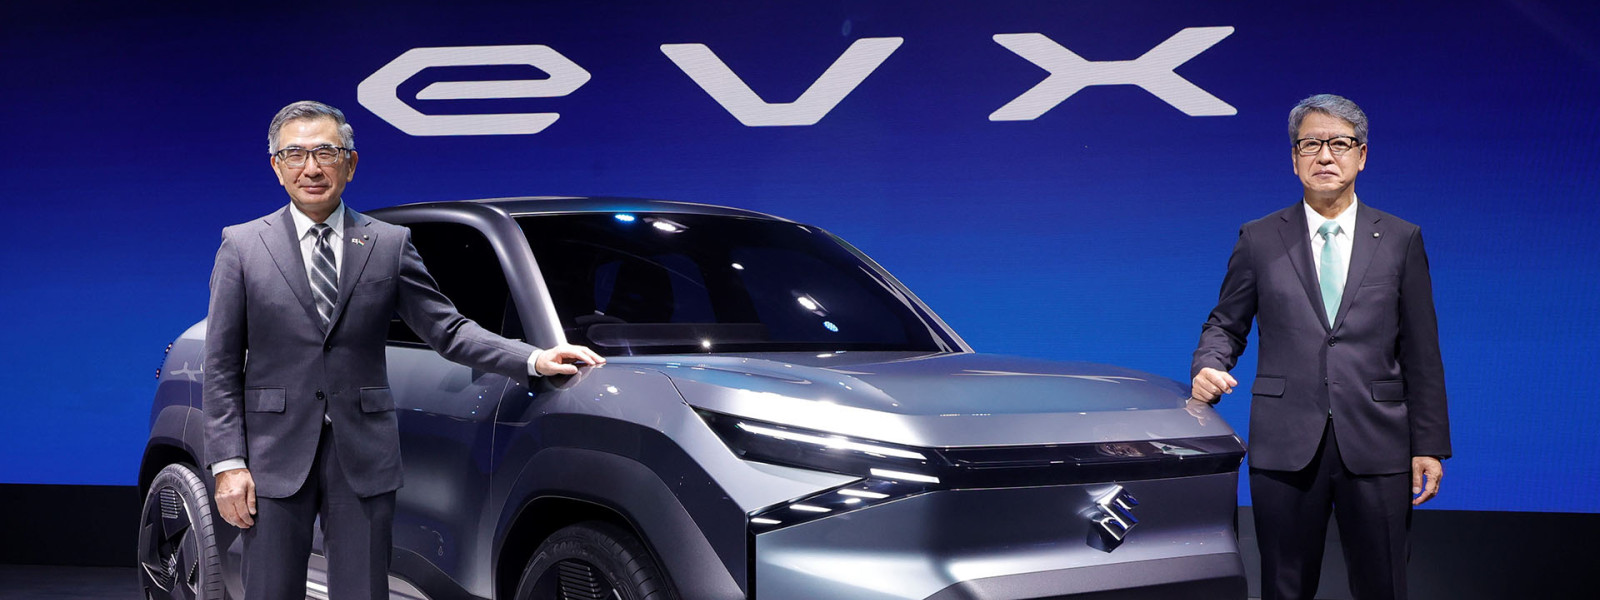 global premiere of concept electric suv evx at maruti suzuki pavilion auto expo'23